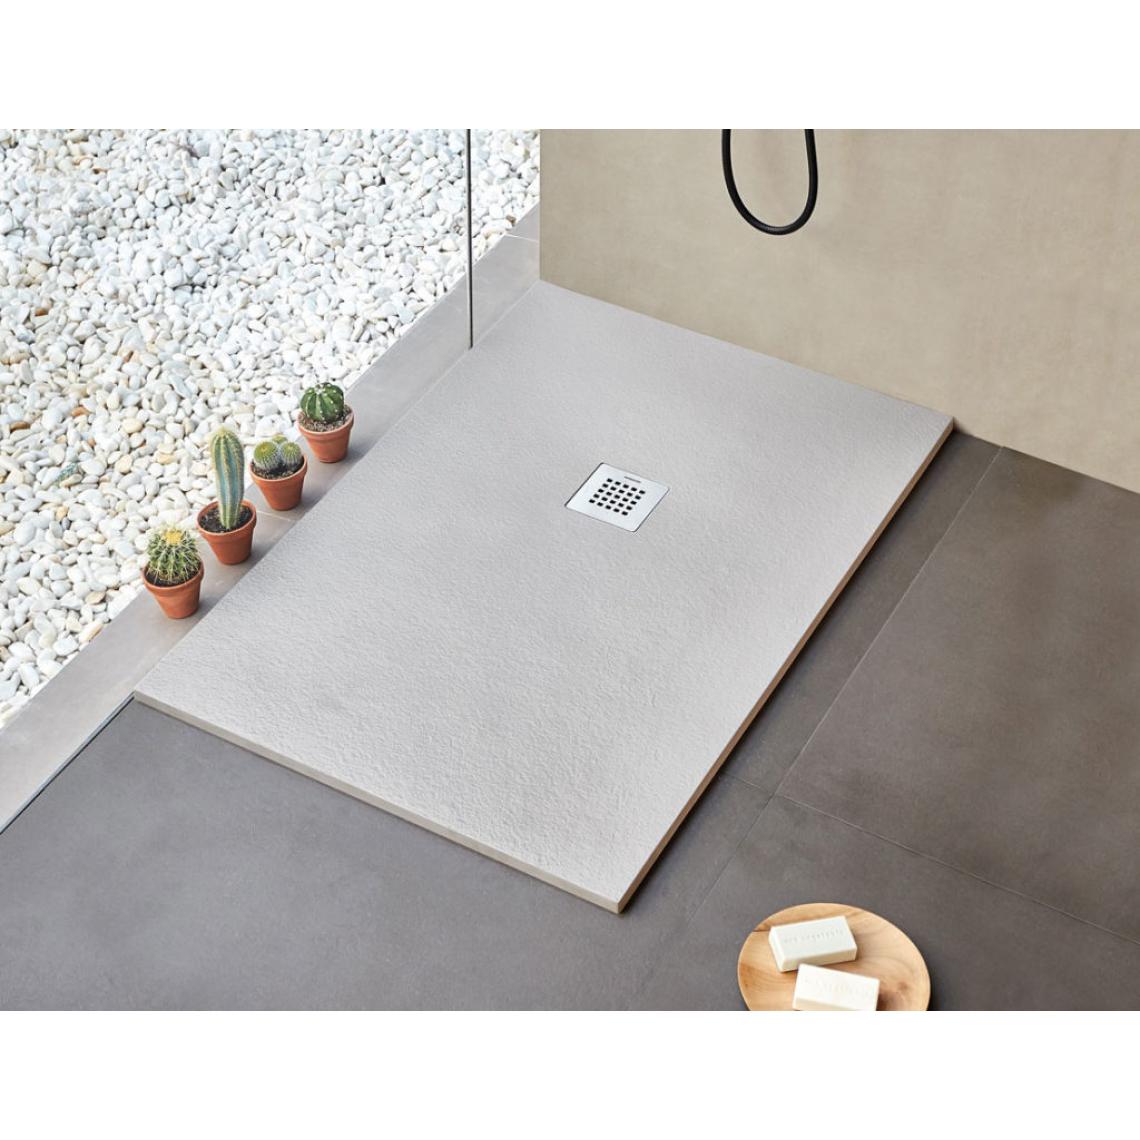 Sanycces - Receveur de douche rectangle gris Strato - 140 x 100 cm - Receveur de douche